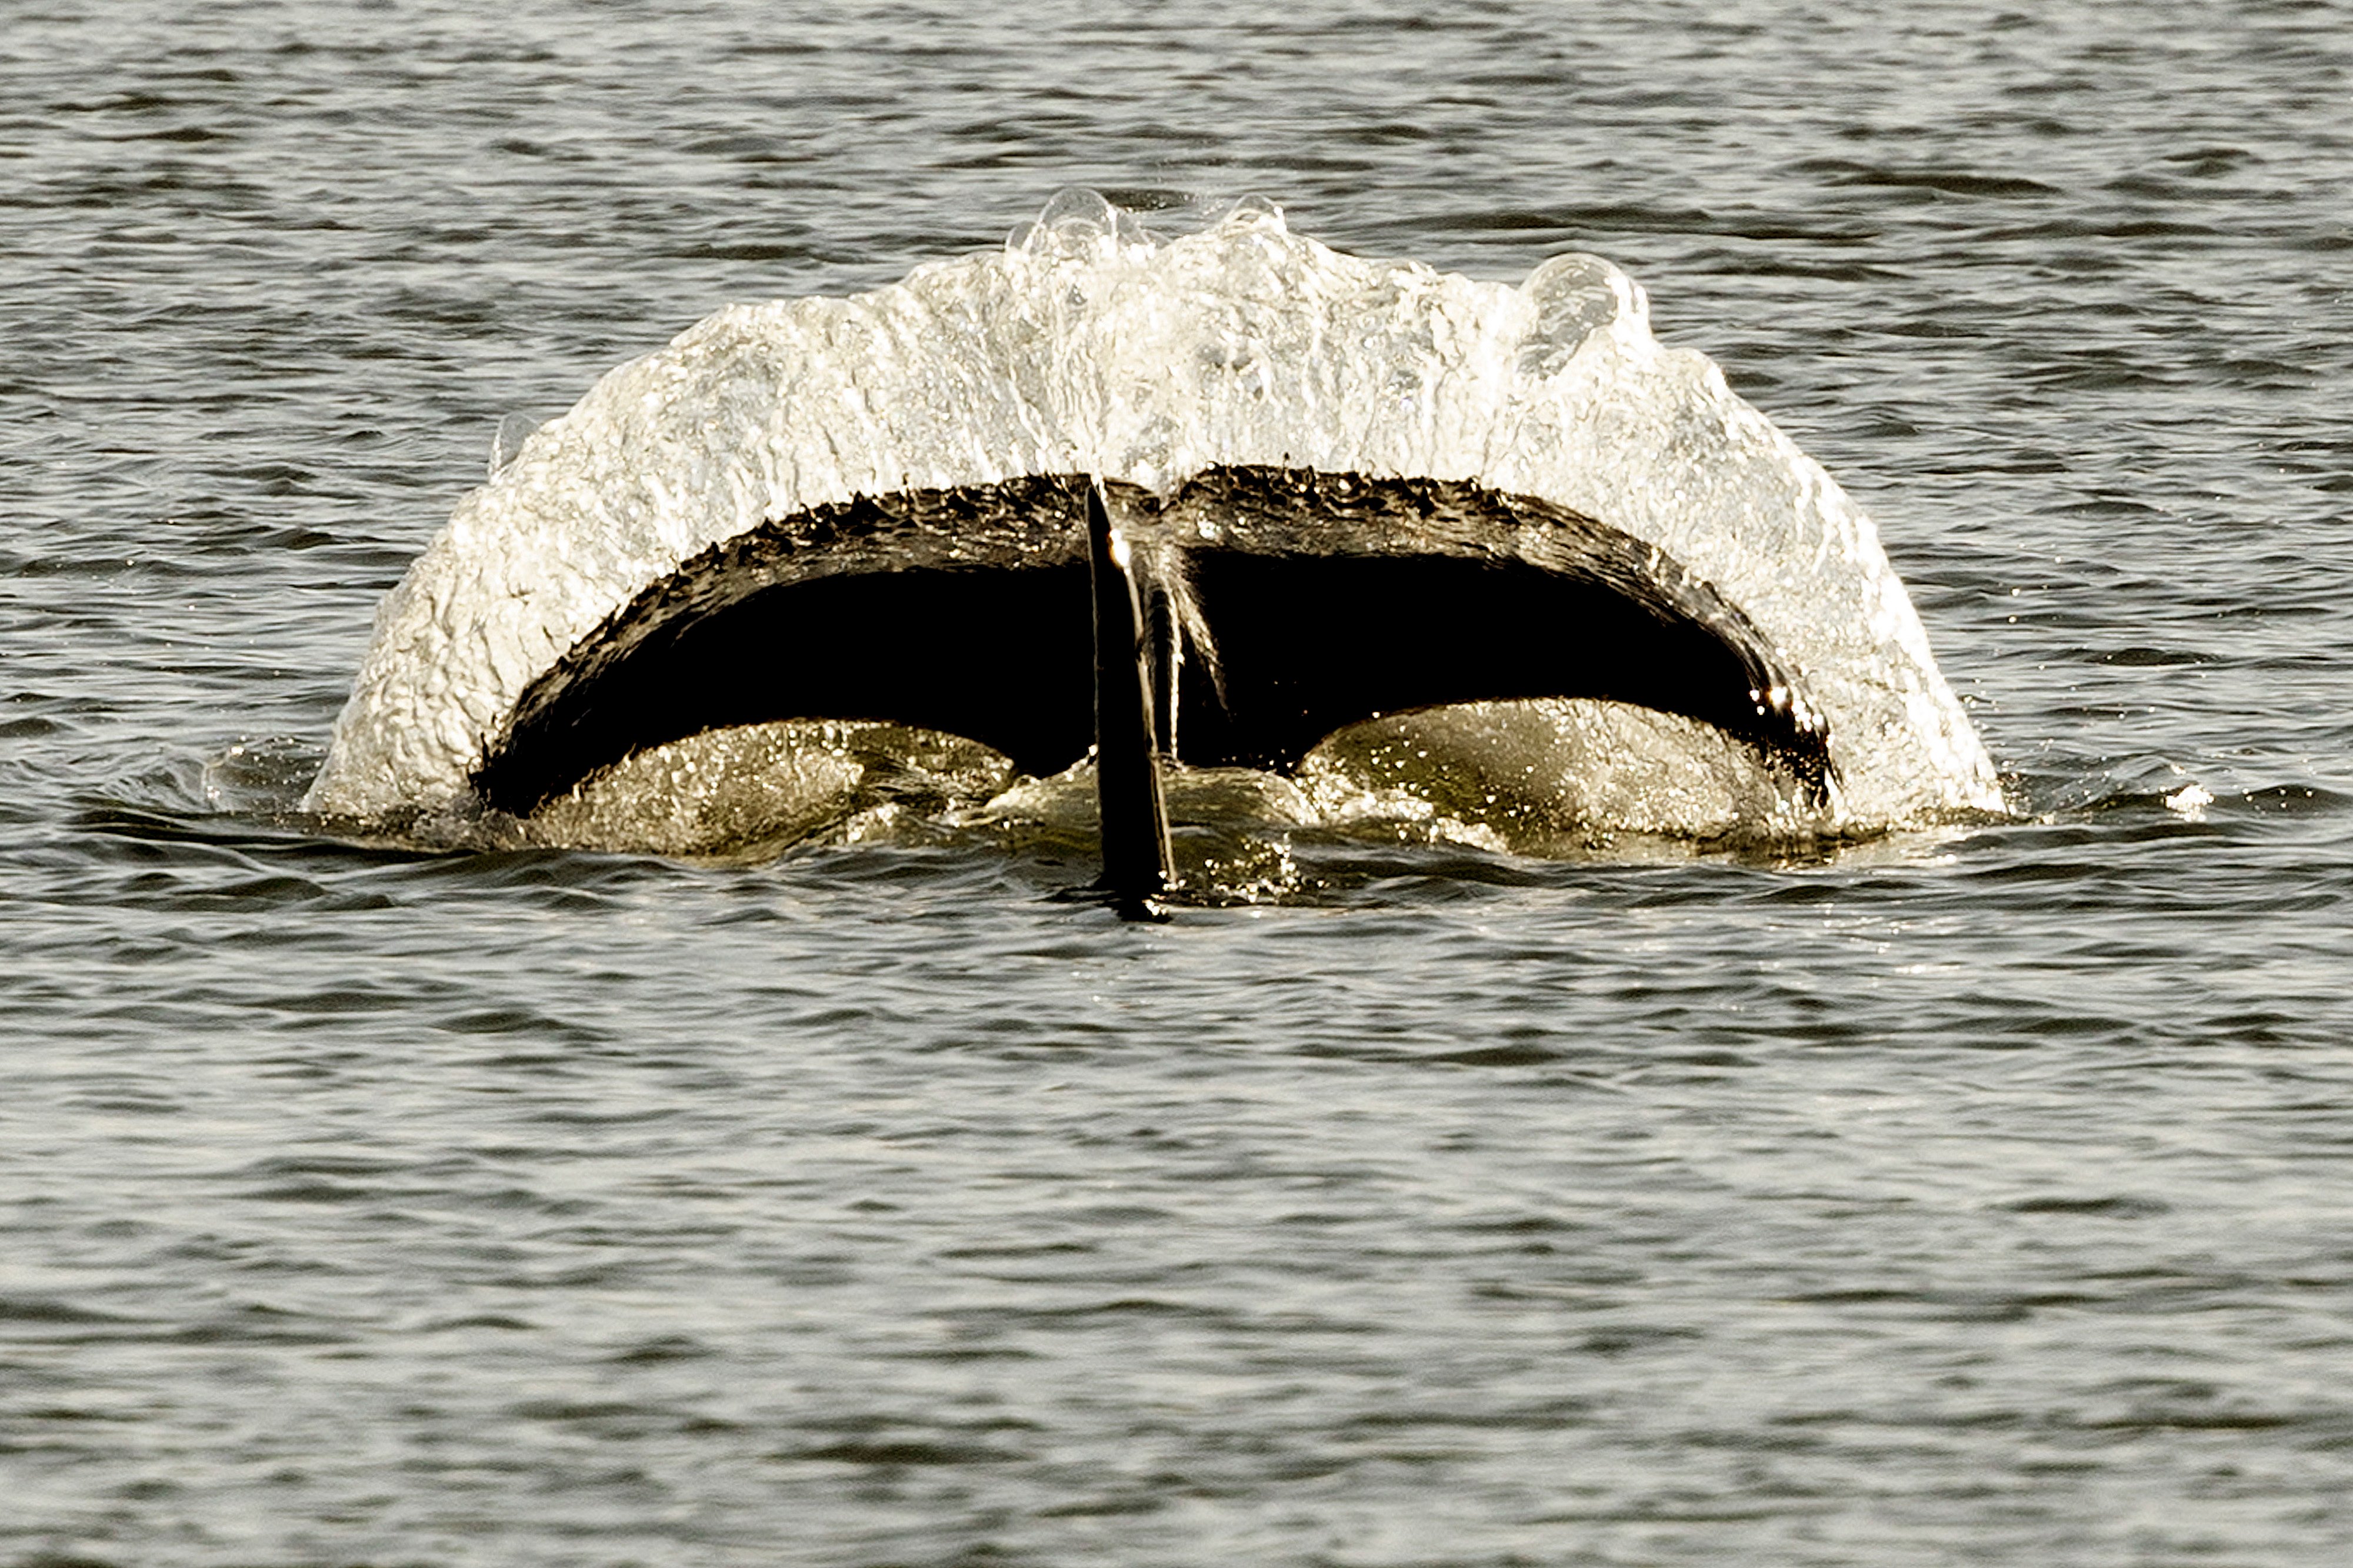 Flere hvaler på vej: Disse sjældne dyr kan komme til Nordjylland